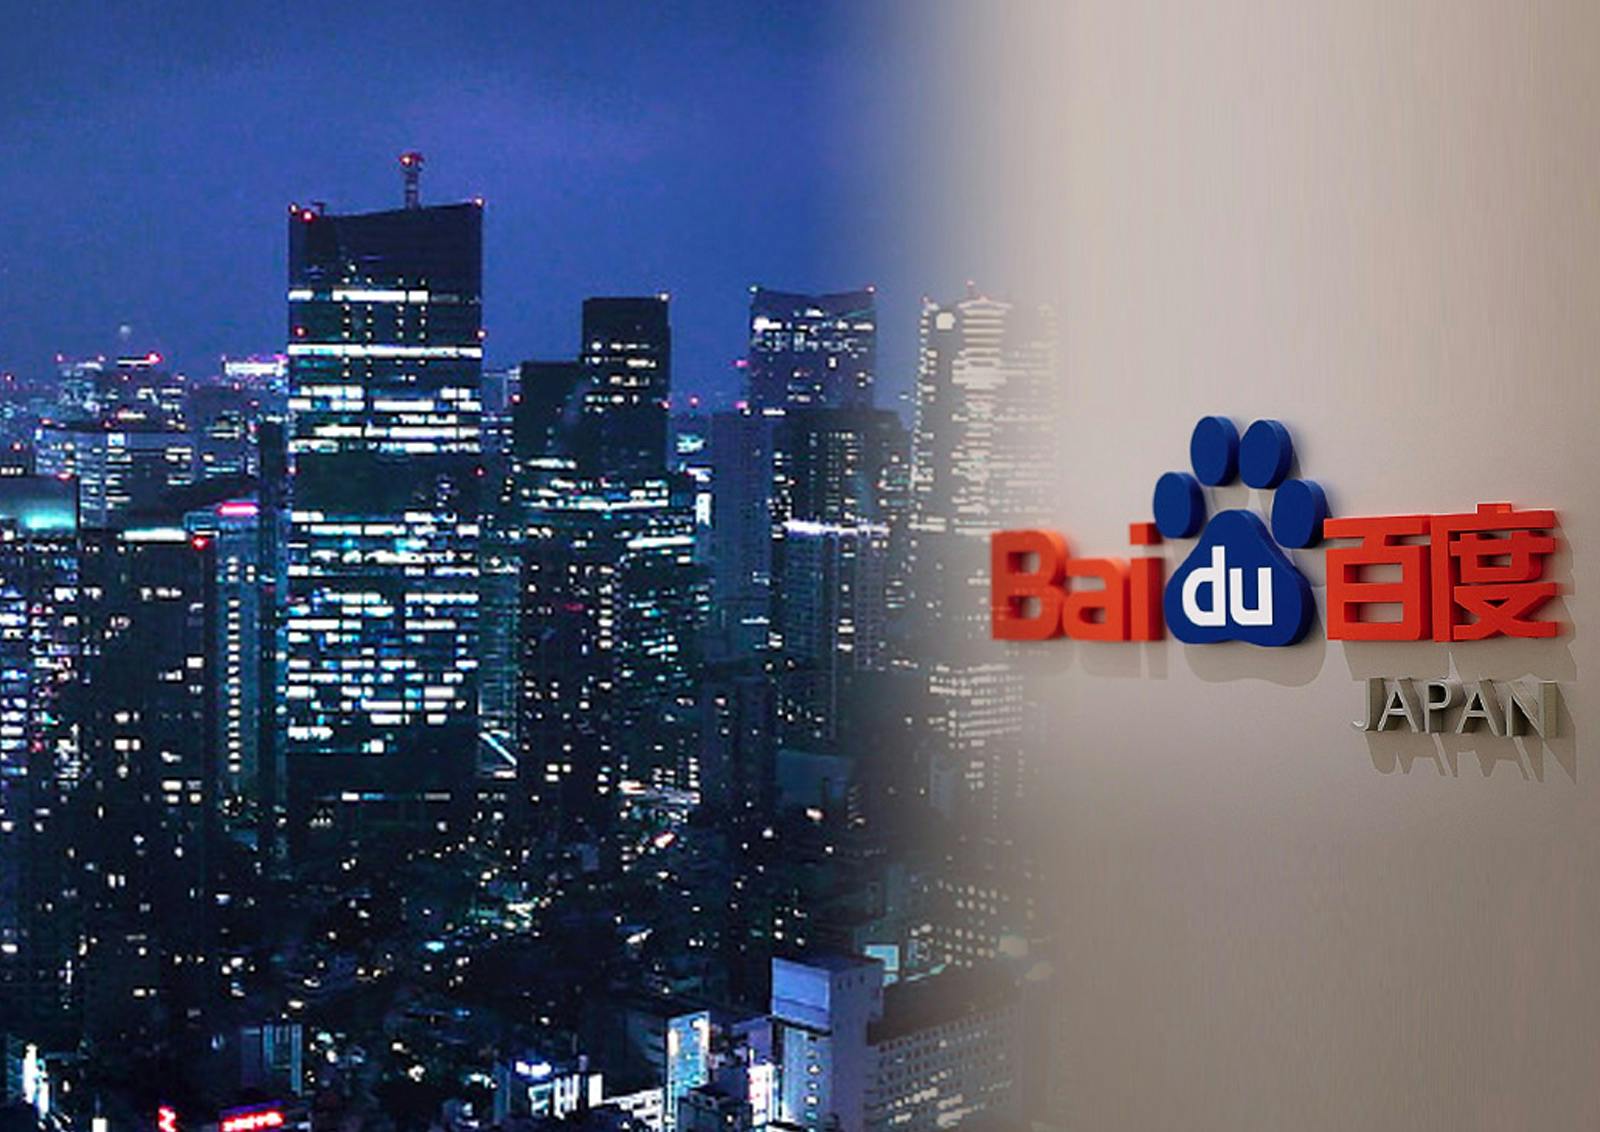 バイドゥ株式会社（Baidu Japan Inc.）